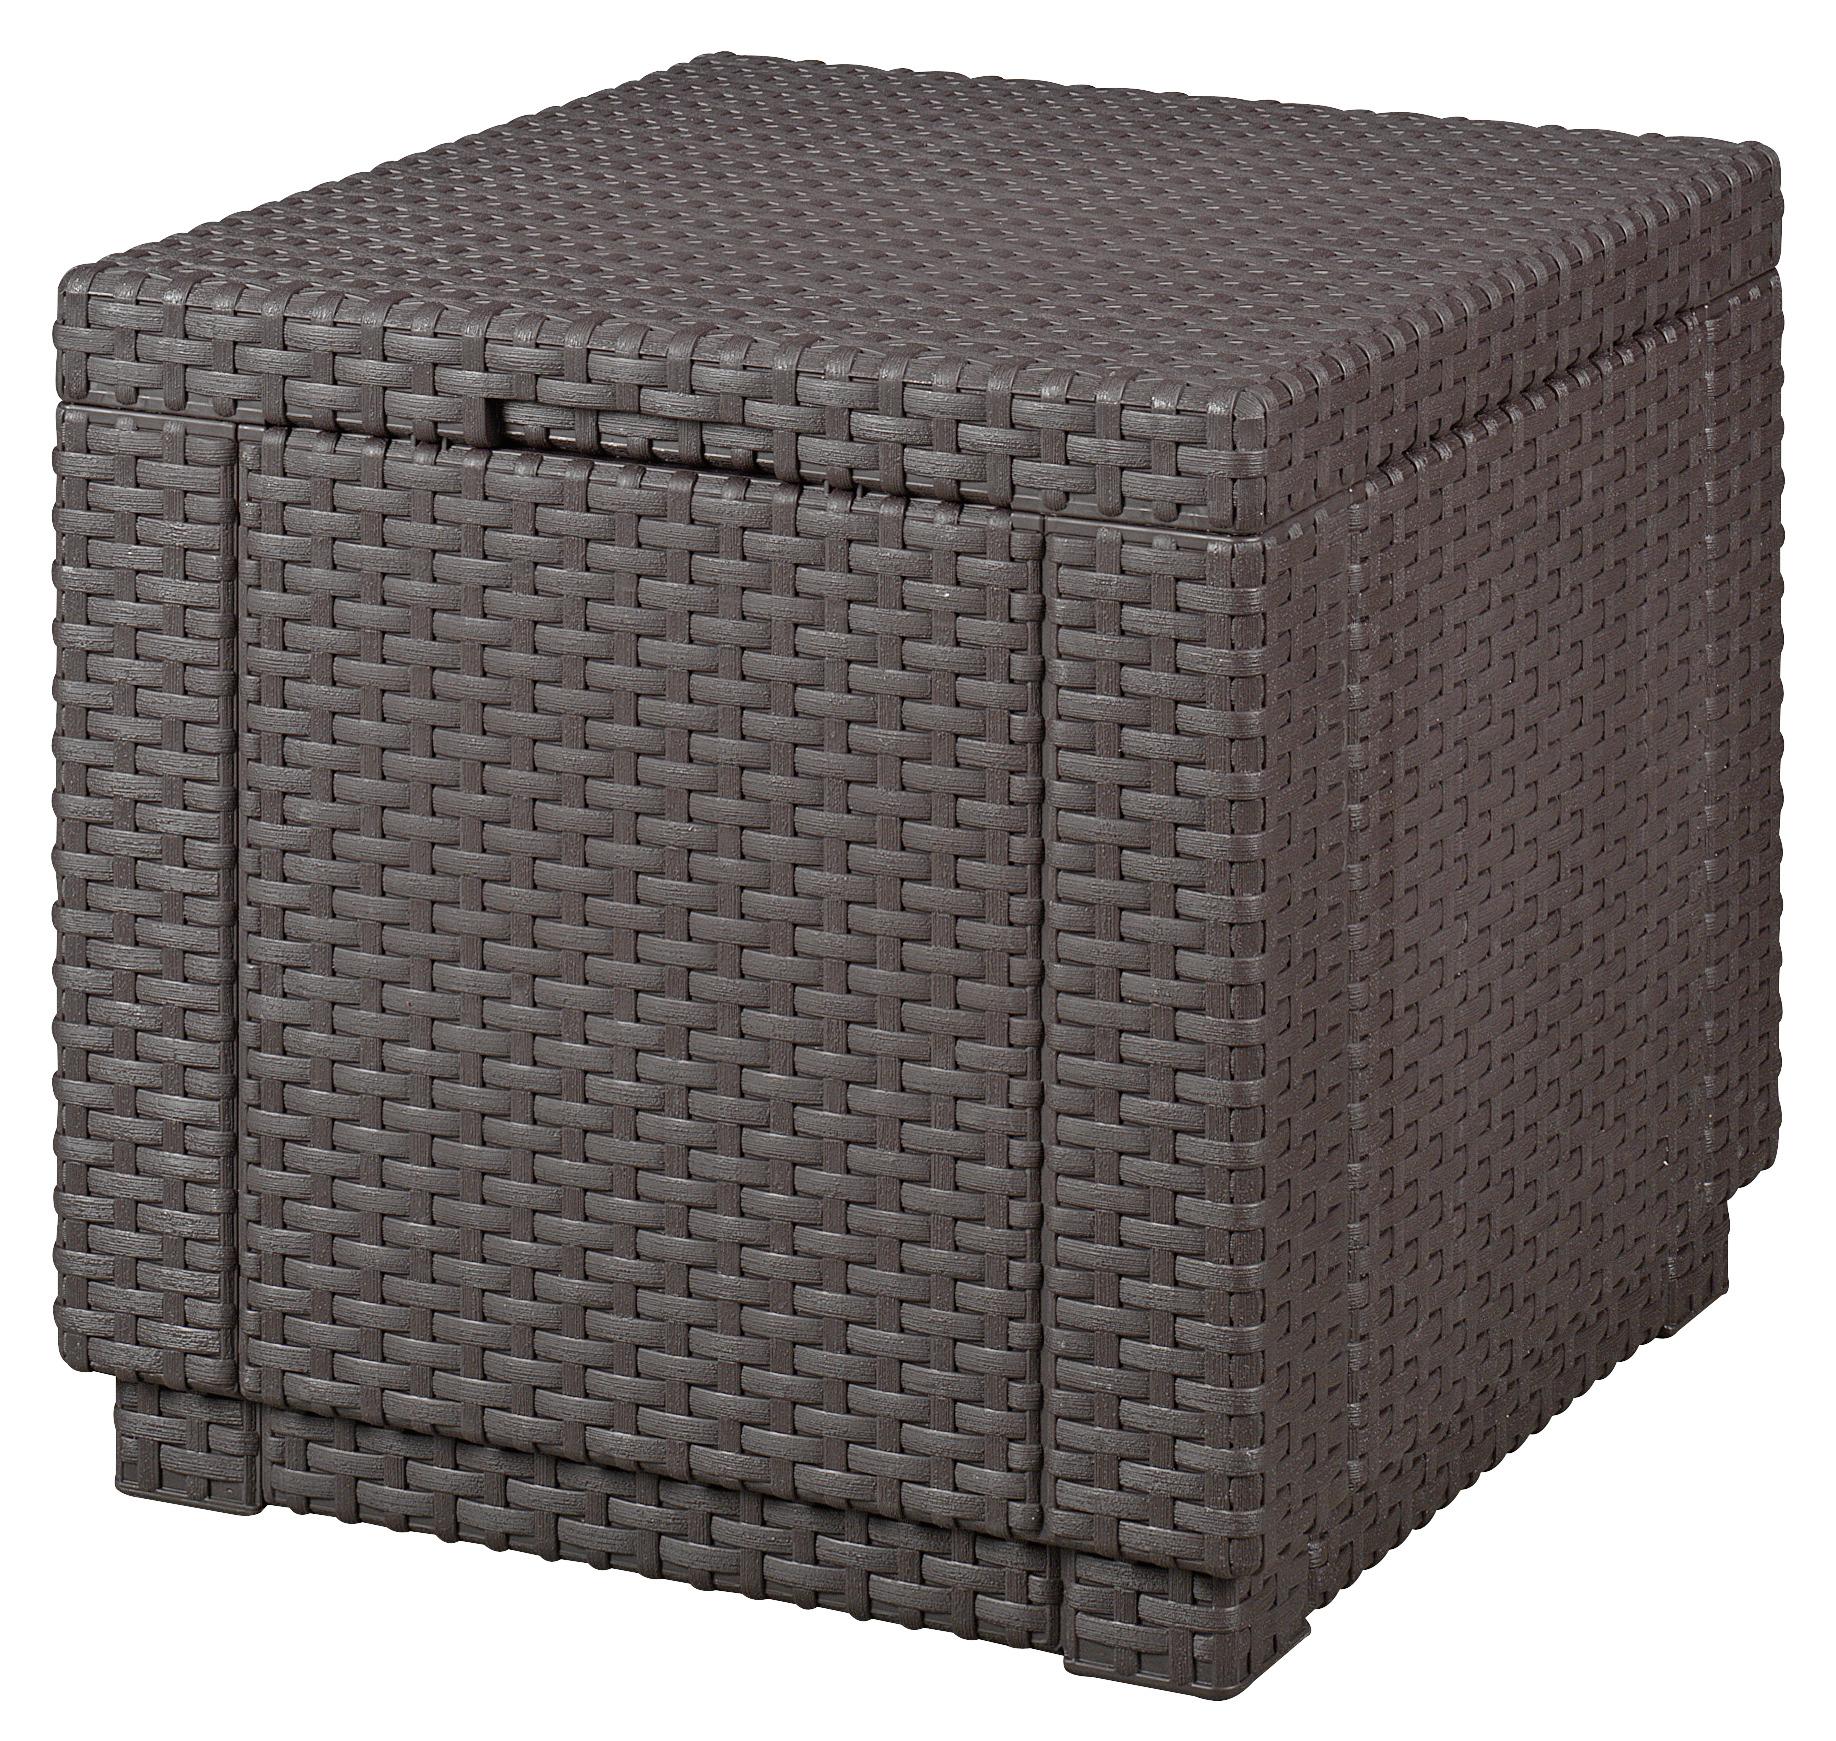 Gartenhocker Cube Polyrattan mit Stauraum - Braun, MODERN, Kunststoff (42/39/42cm) - Allibert